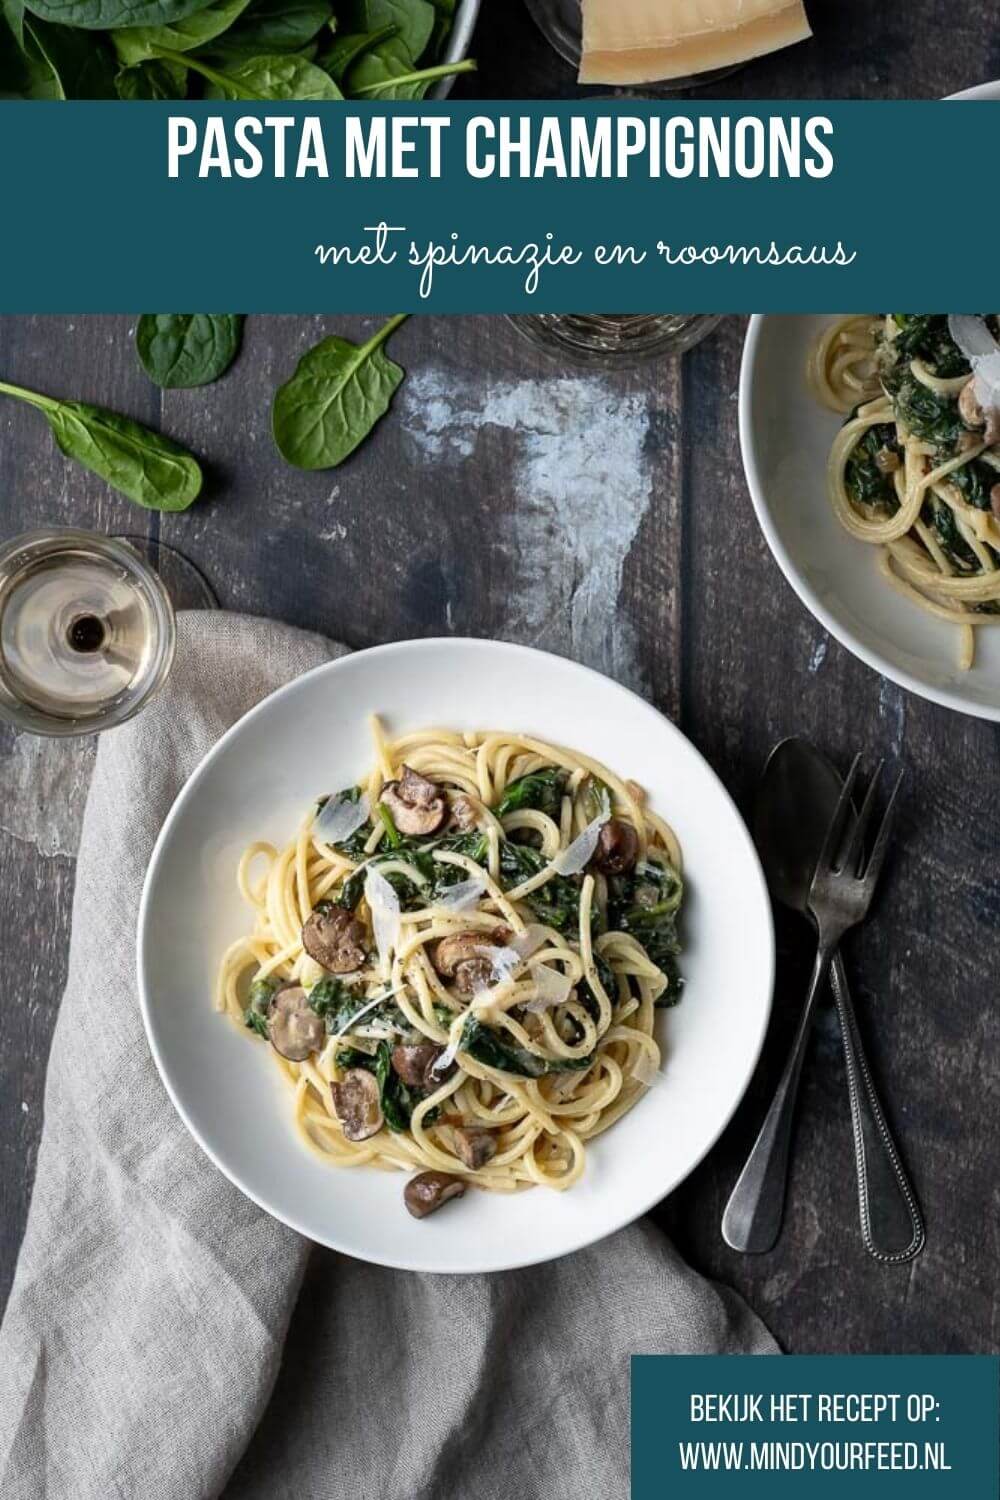 pasta met champignons, pasta met paddenstoelen, pasta met roomsaus, spaghetti met champignons en roomsaus, spinazie, vegetarisch pasta recept